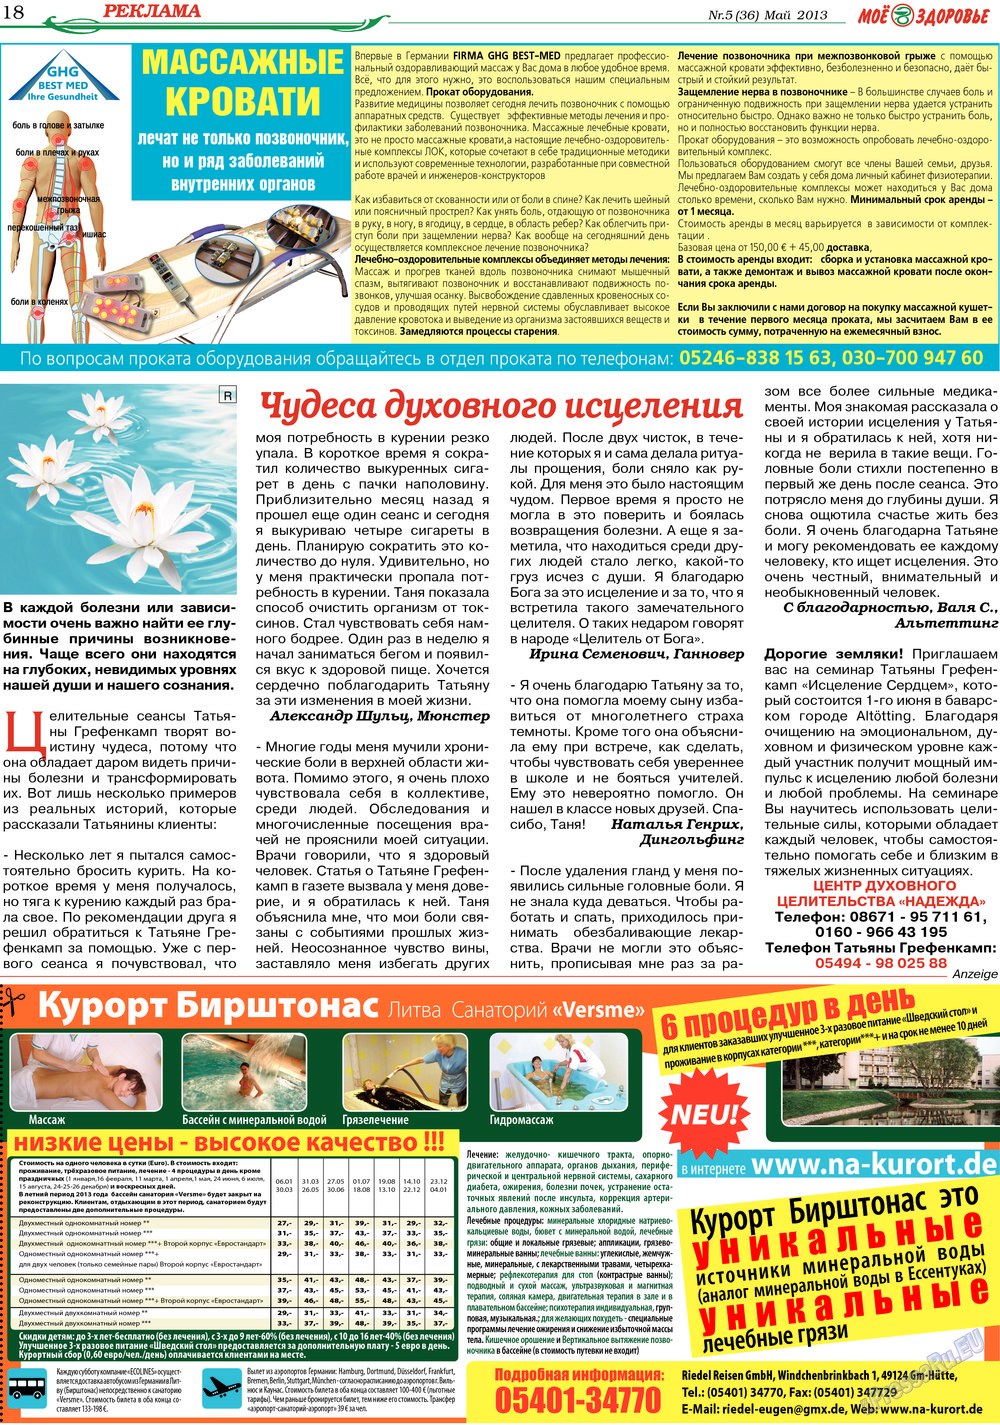 Кругозор, газета. 2013 №5 стр.18